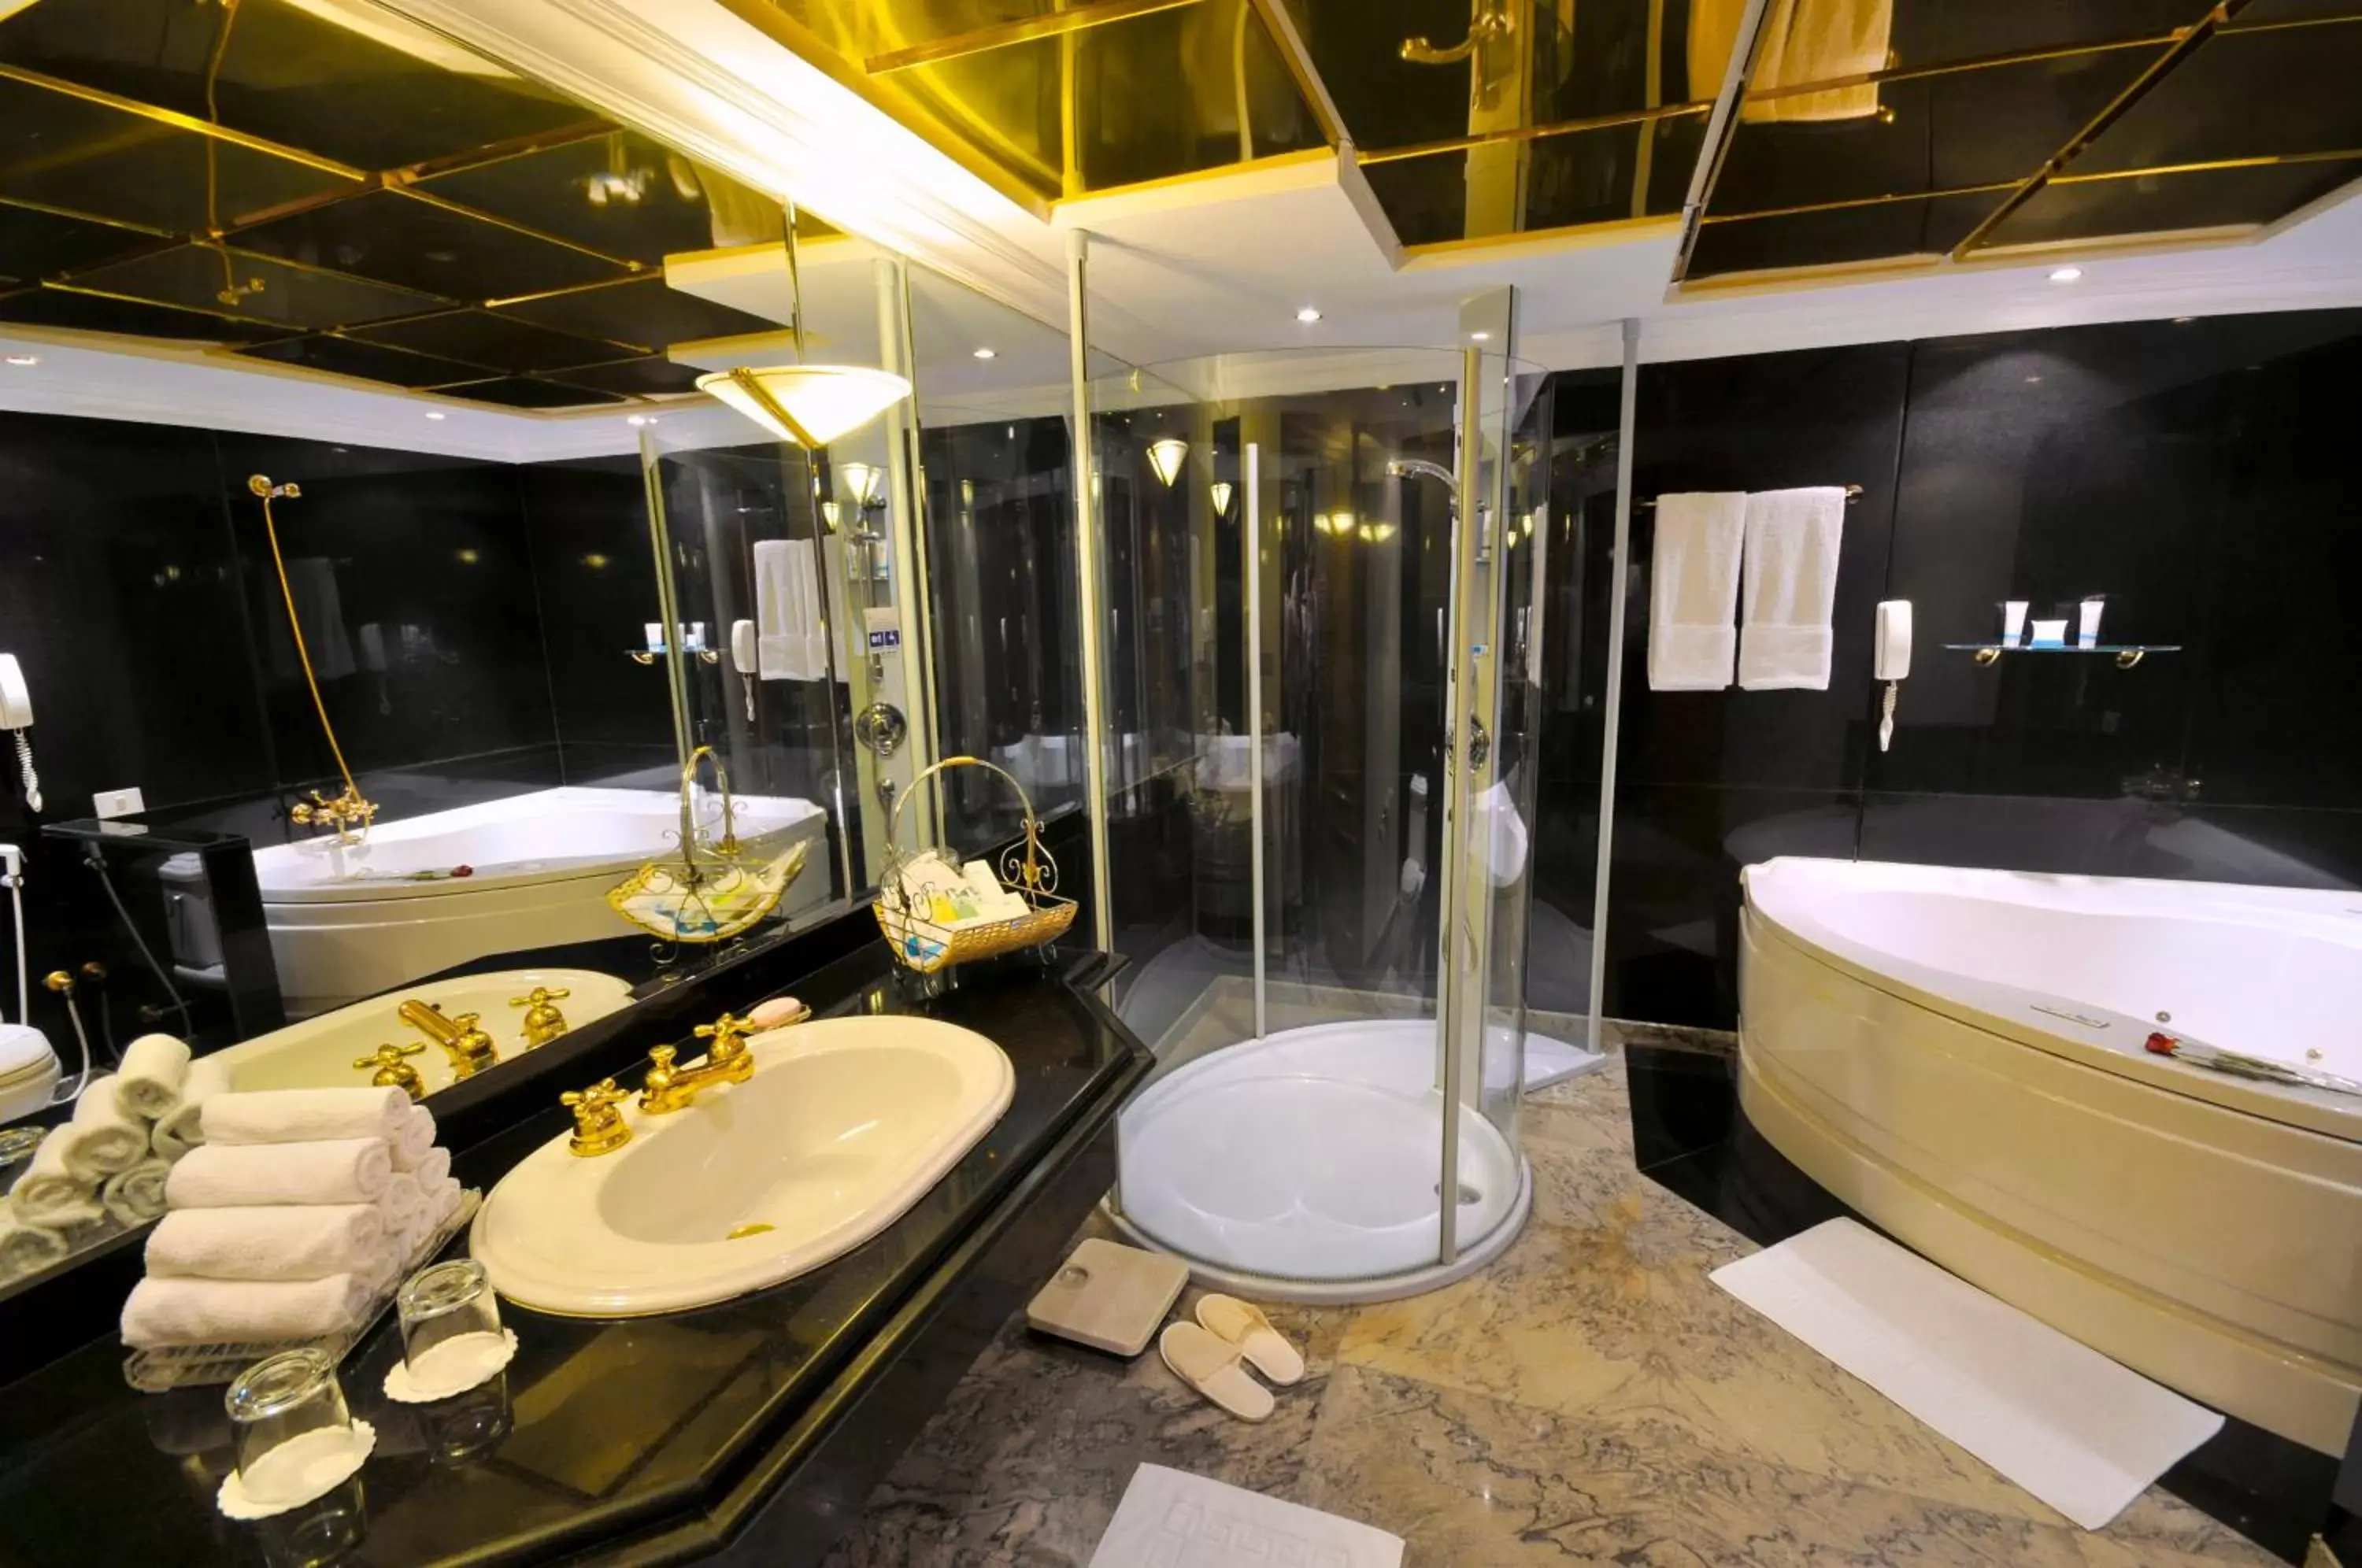 Bathroom in Marina Sharm Hotel